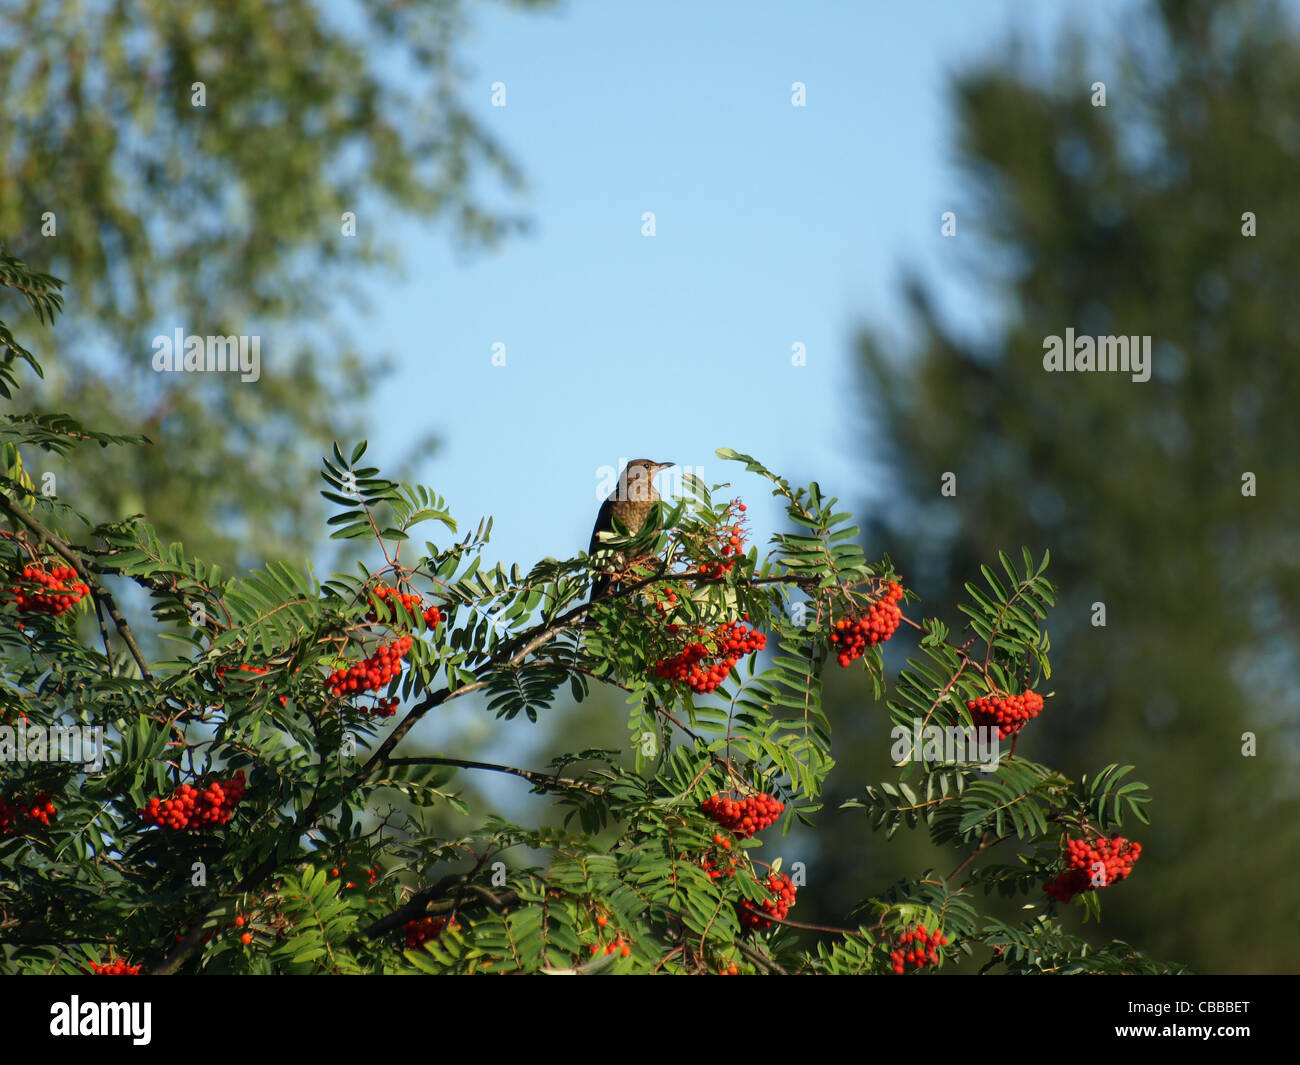 European Rowan, European mountain ash / Sorbus aucuparia / Eberesche Stock Photo